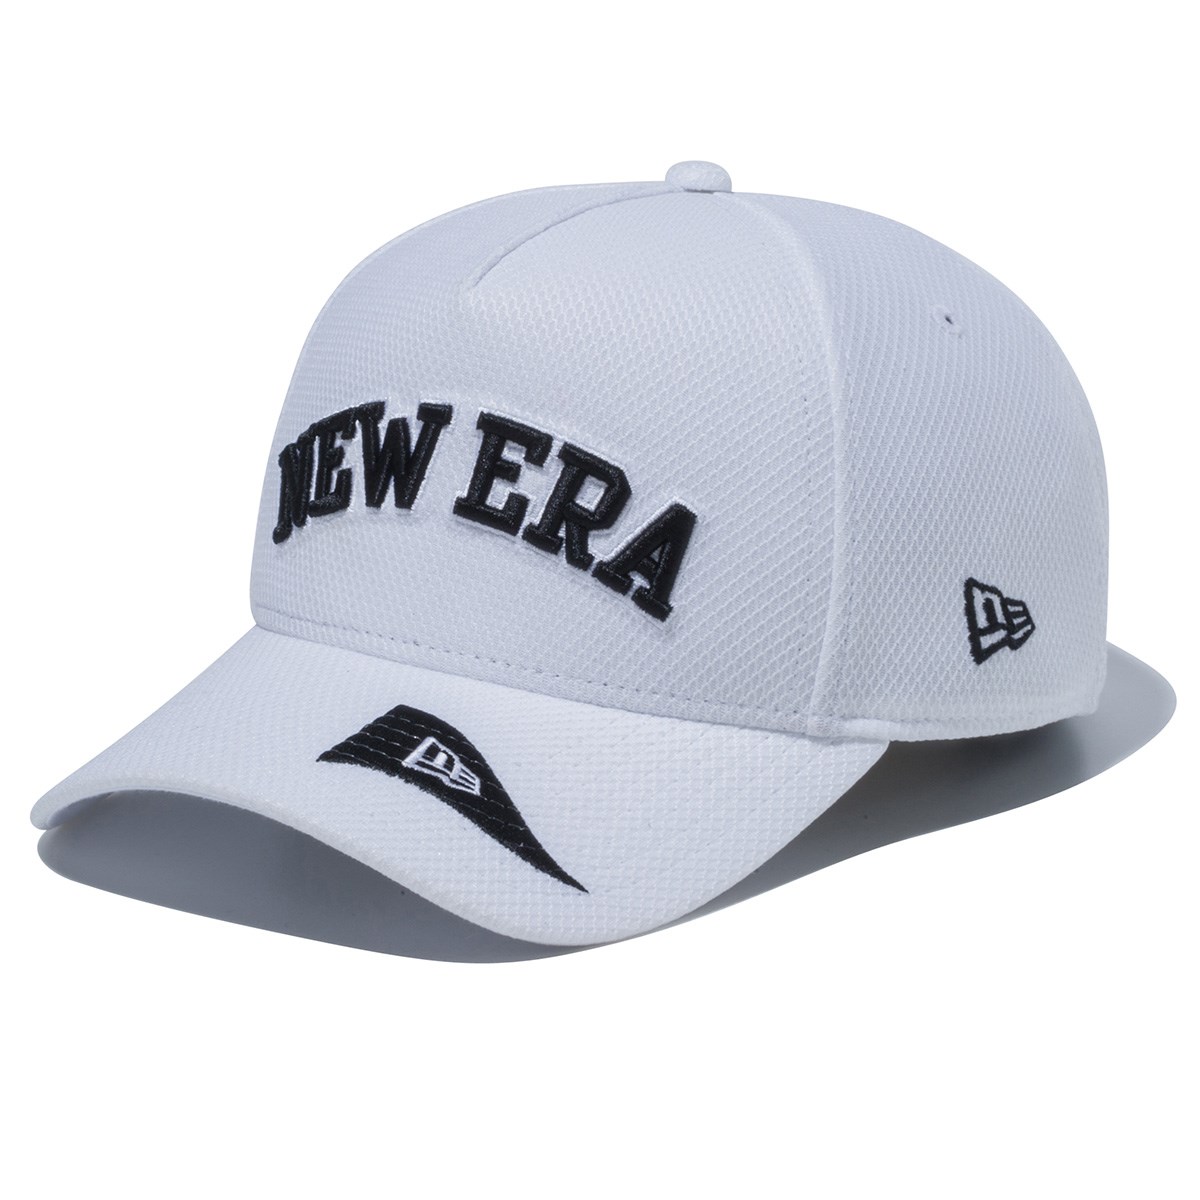 Dショッピング ニューエラ New Era Gf 940af Tour Swhi キャップ フリー ホワイト カテゴリ 帽子 バイザーの販売できる商品 Gdoゴルフショップ ドコモの通販サイト